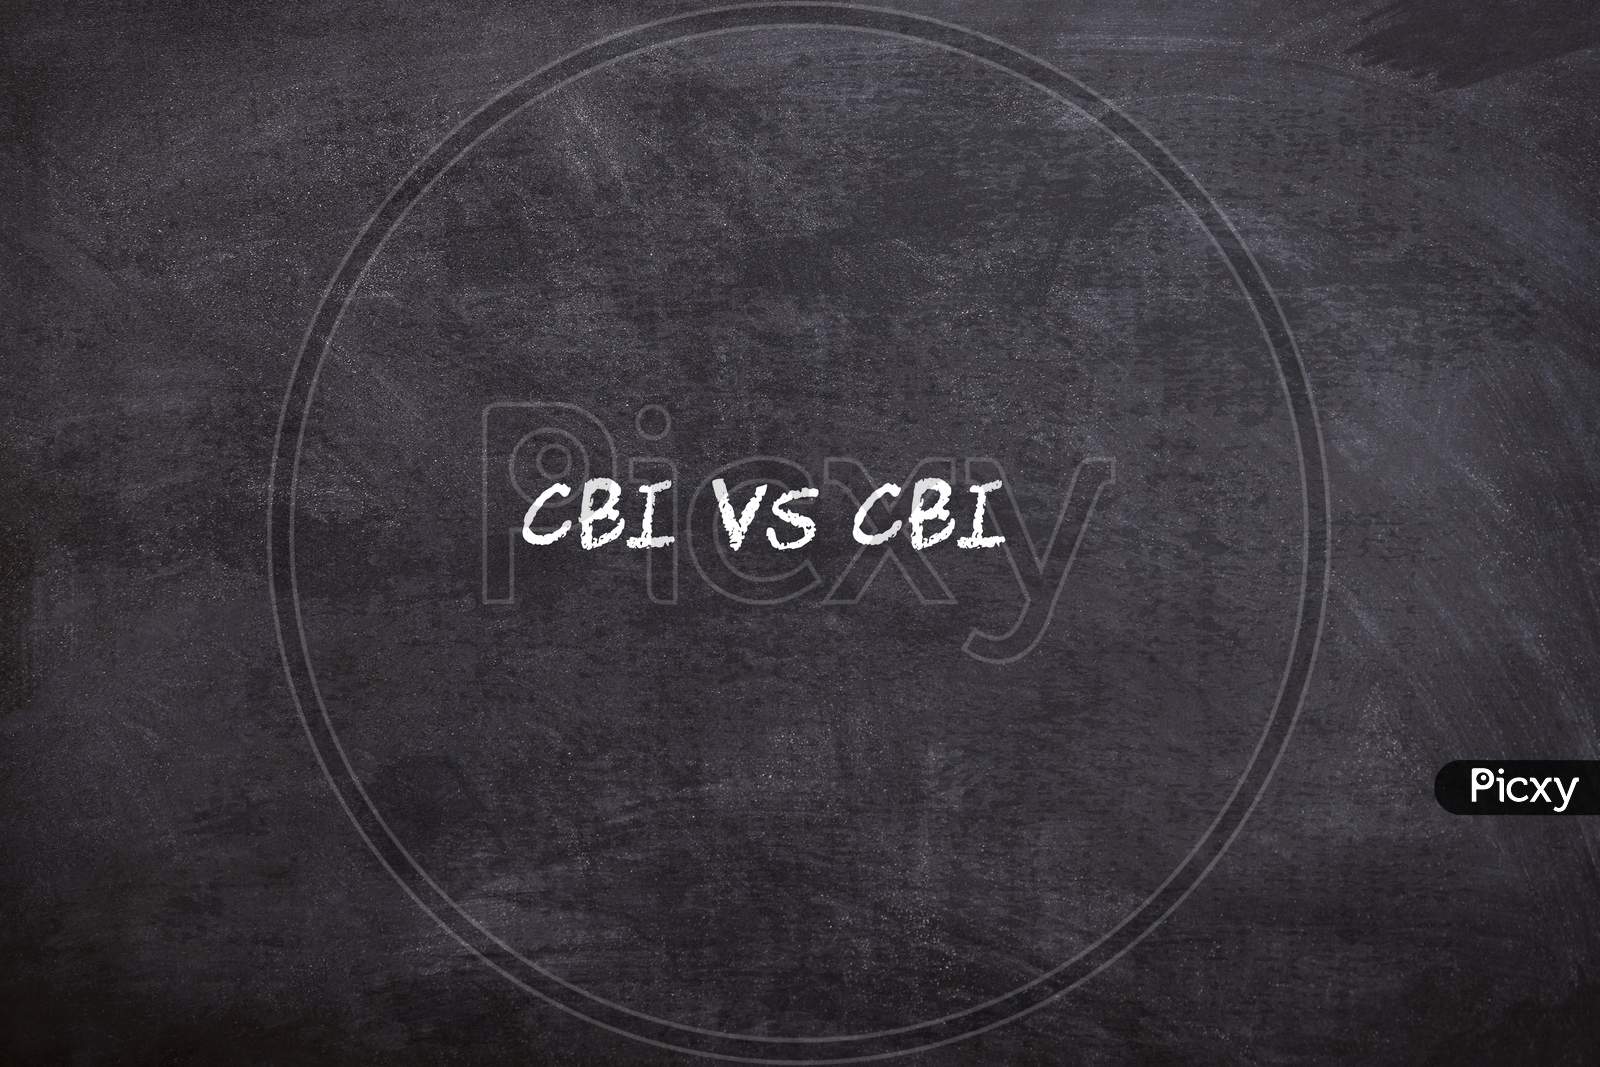 CBI VS CBI written on a Black Board